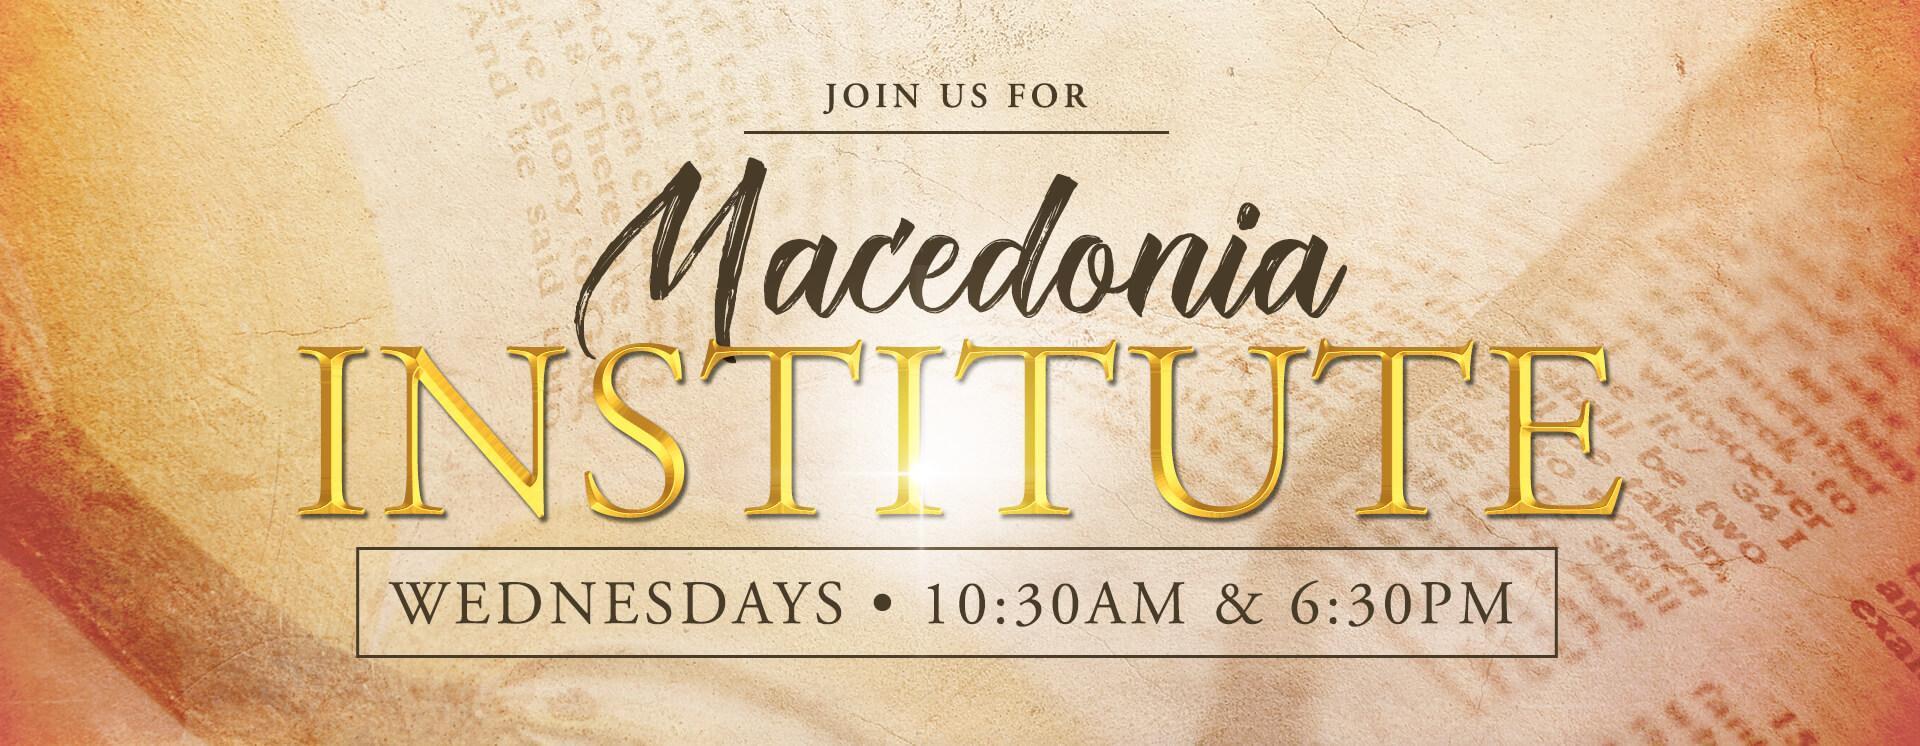 MacedoniaDayton-MacedoniaInstitute-2019-Slide1